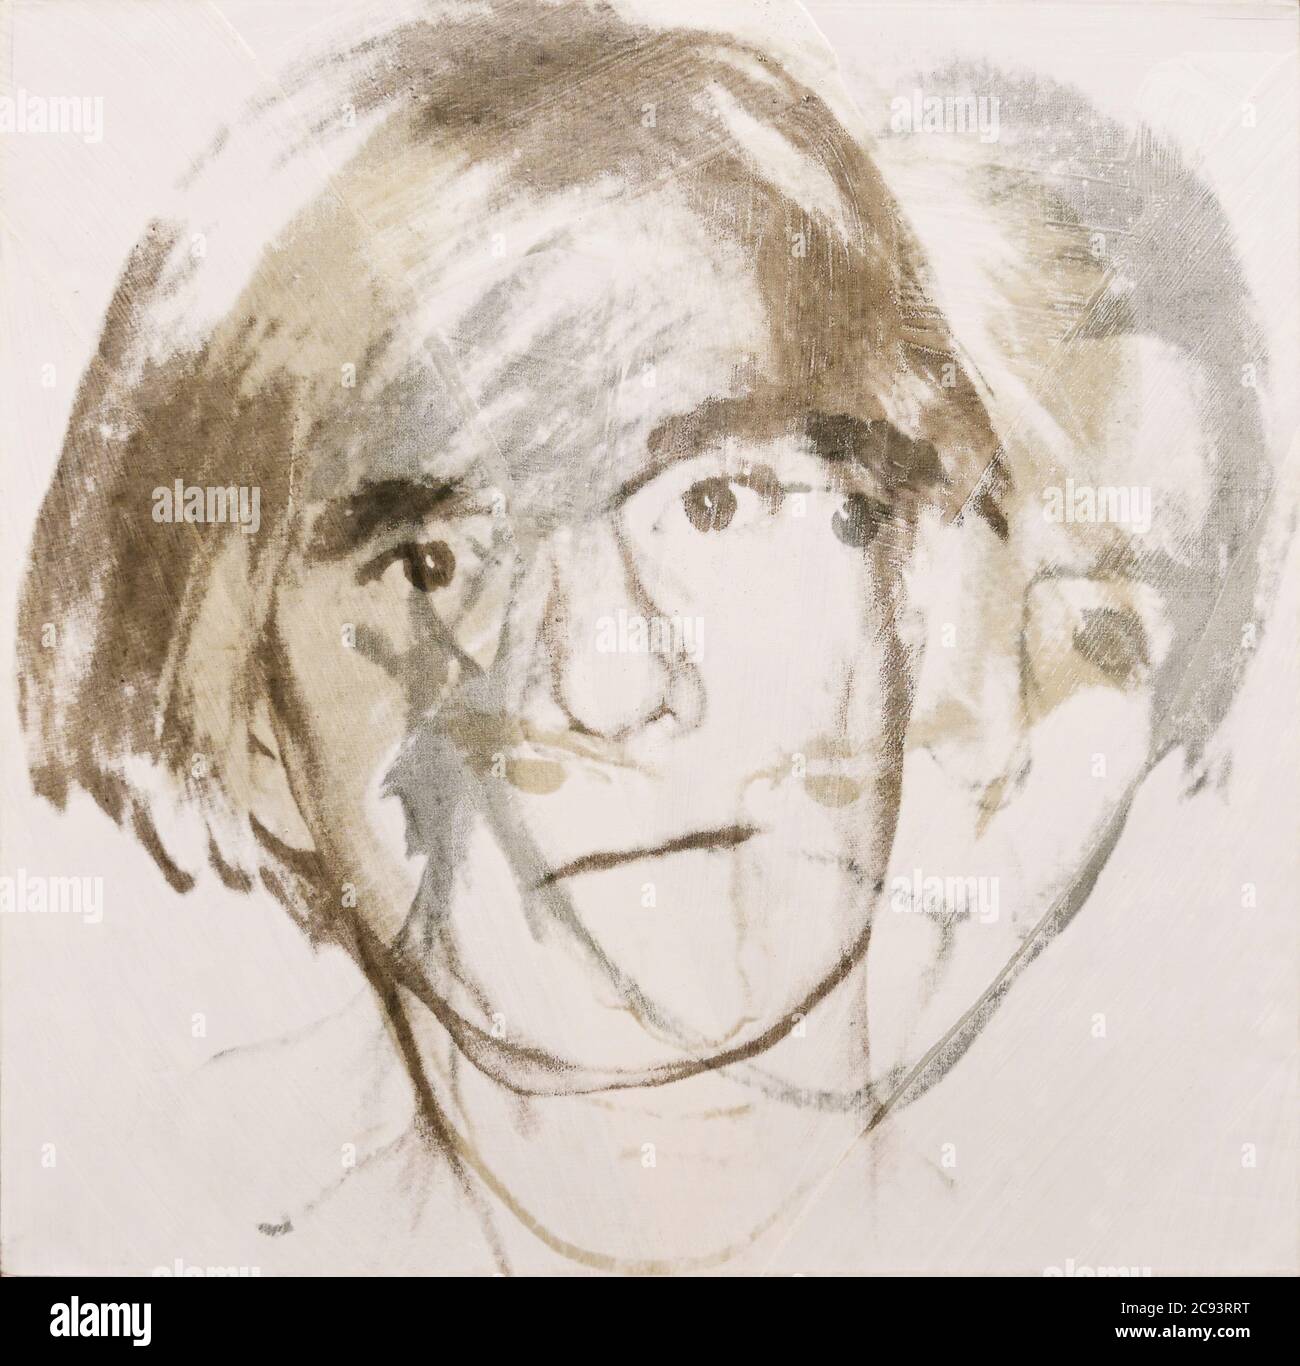 Autorretrato de Andy Warhol, 1978 Foto de stock